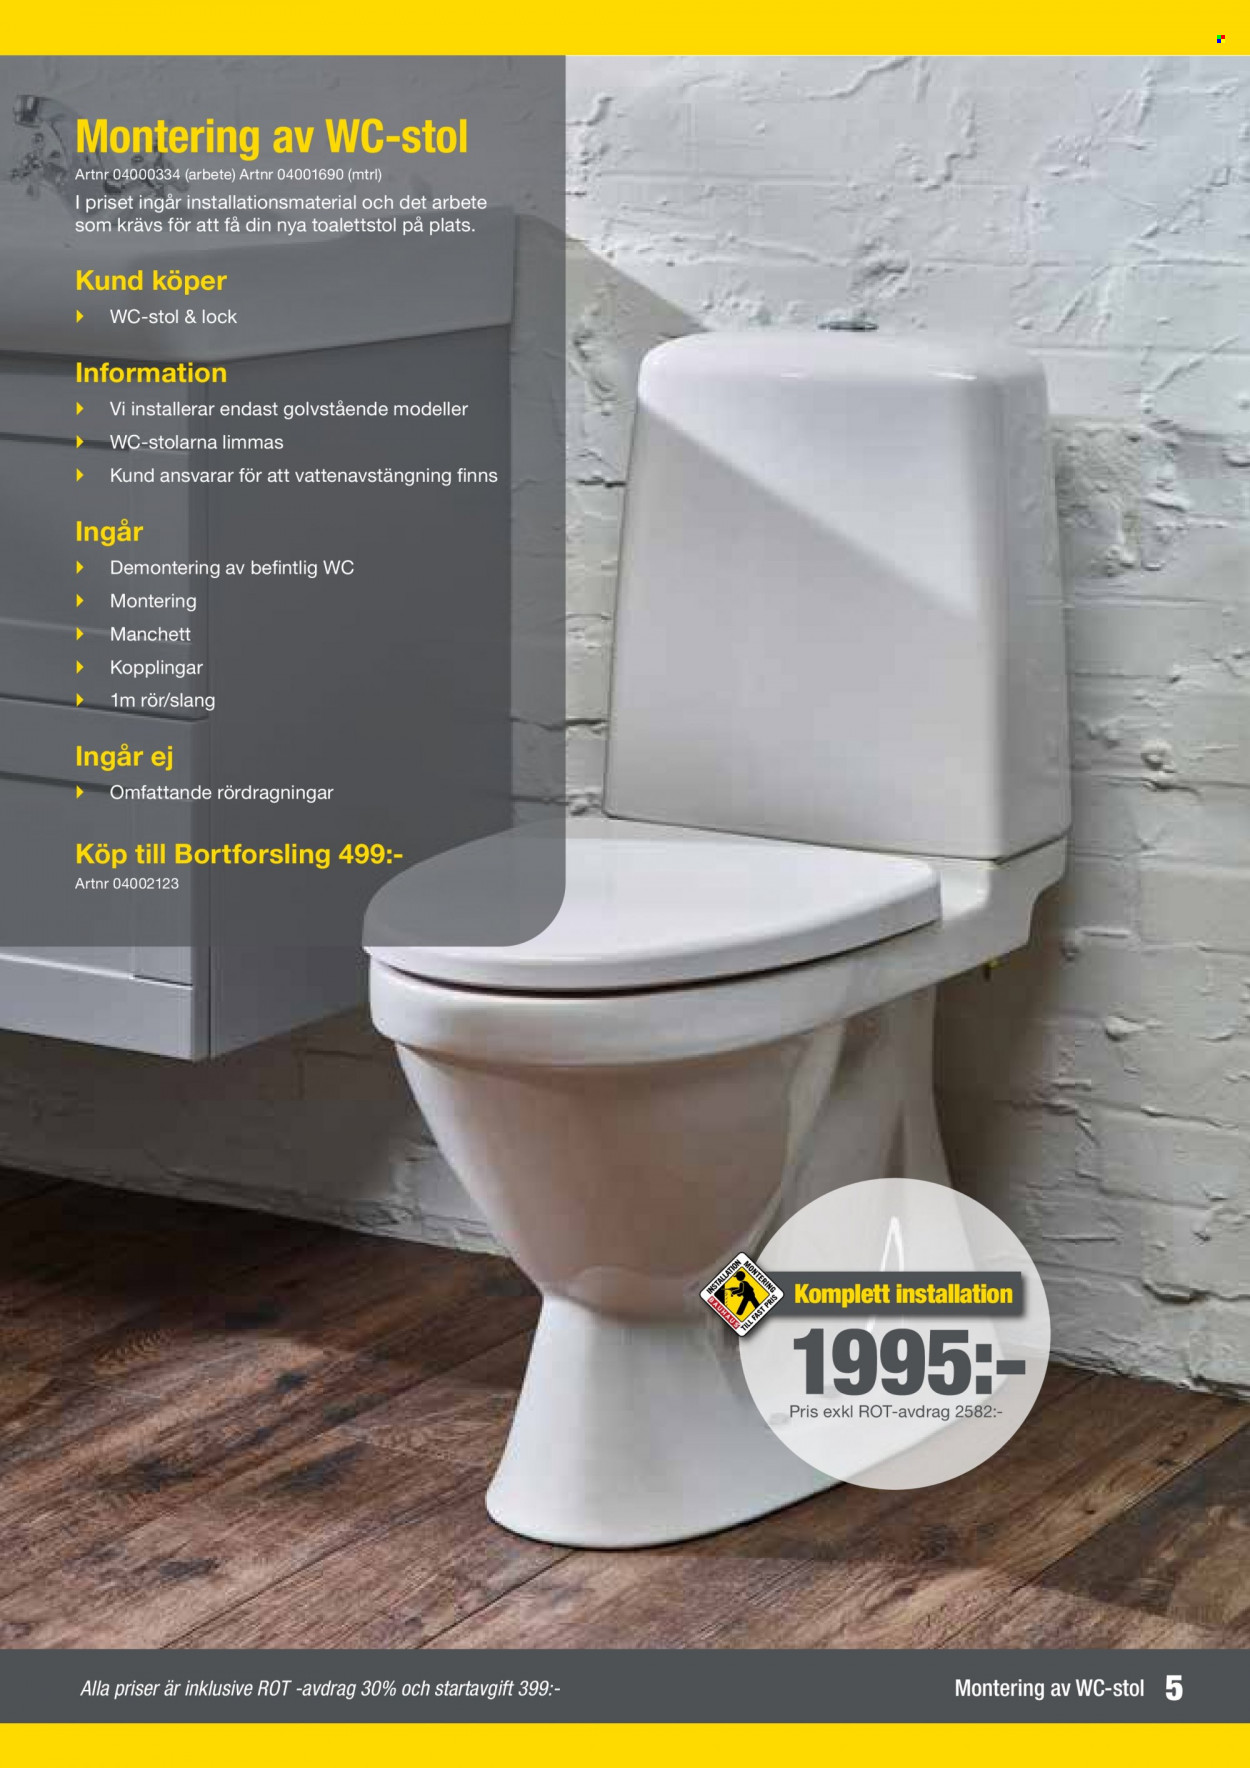 Bauhaus reklamblad - varor från reklamblad - stol, toalettstol. Sida 4.